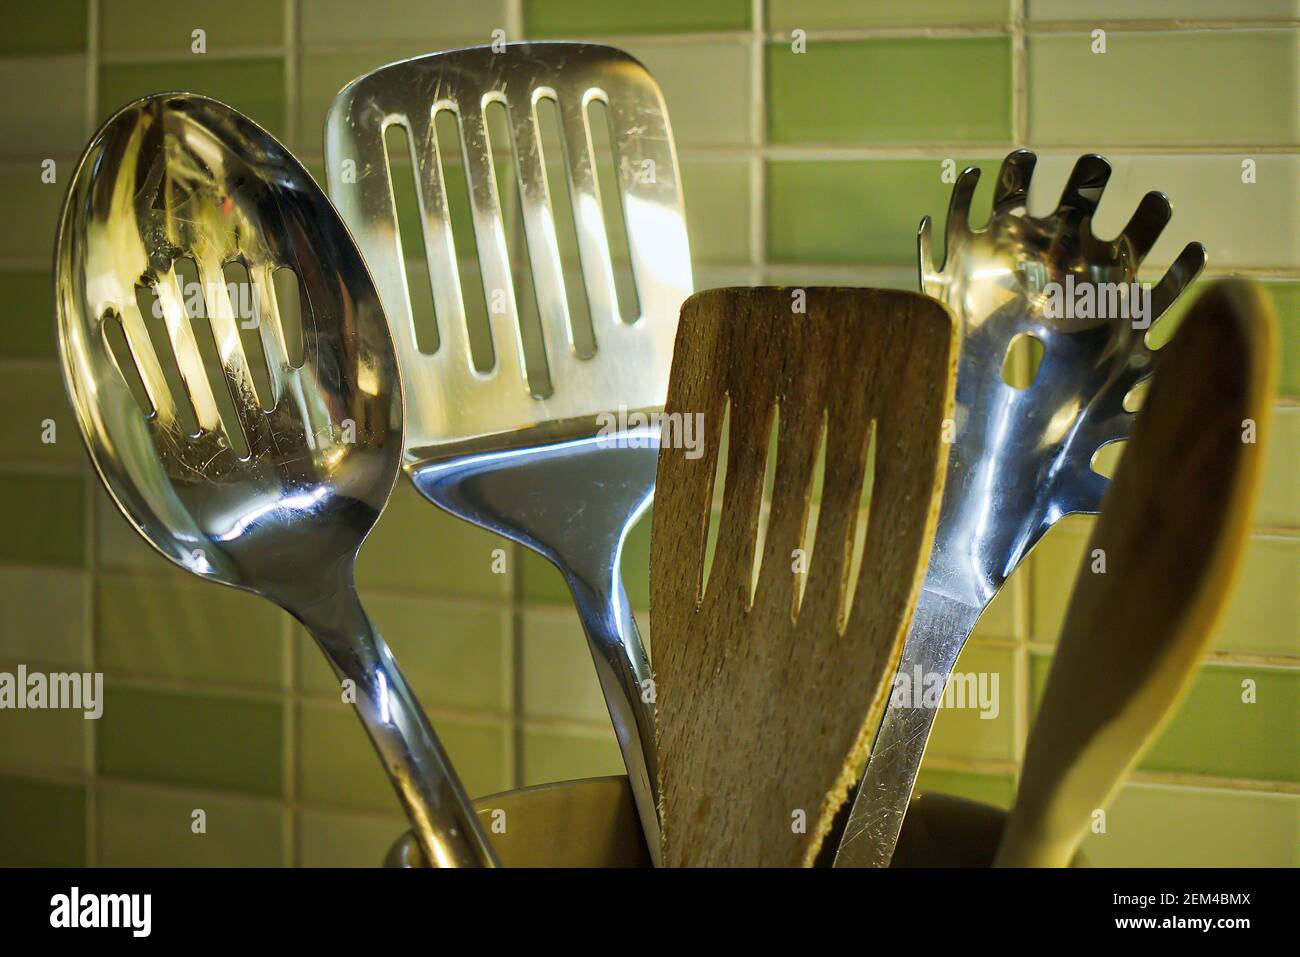 Utensili da cucina in una pentola di ceramica - cucchiaio di legno, spatola  e utensili in acciaio inox utilizzati per cucinare gli alimenti Foto stock  - Alamy